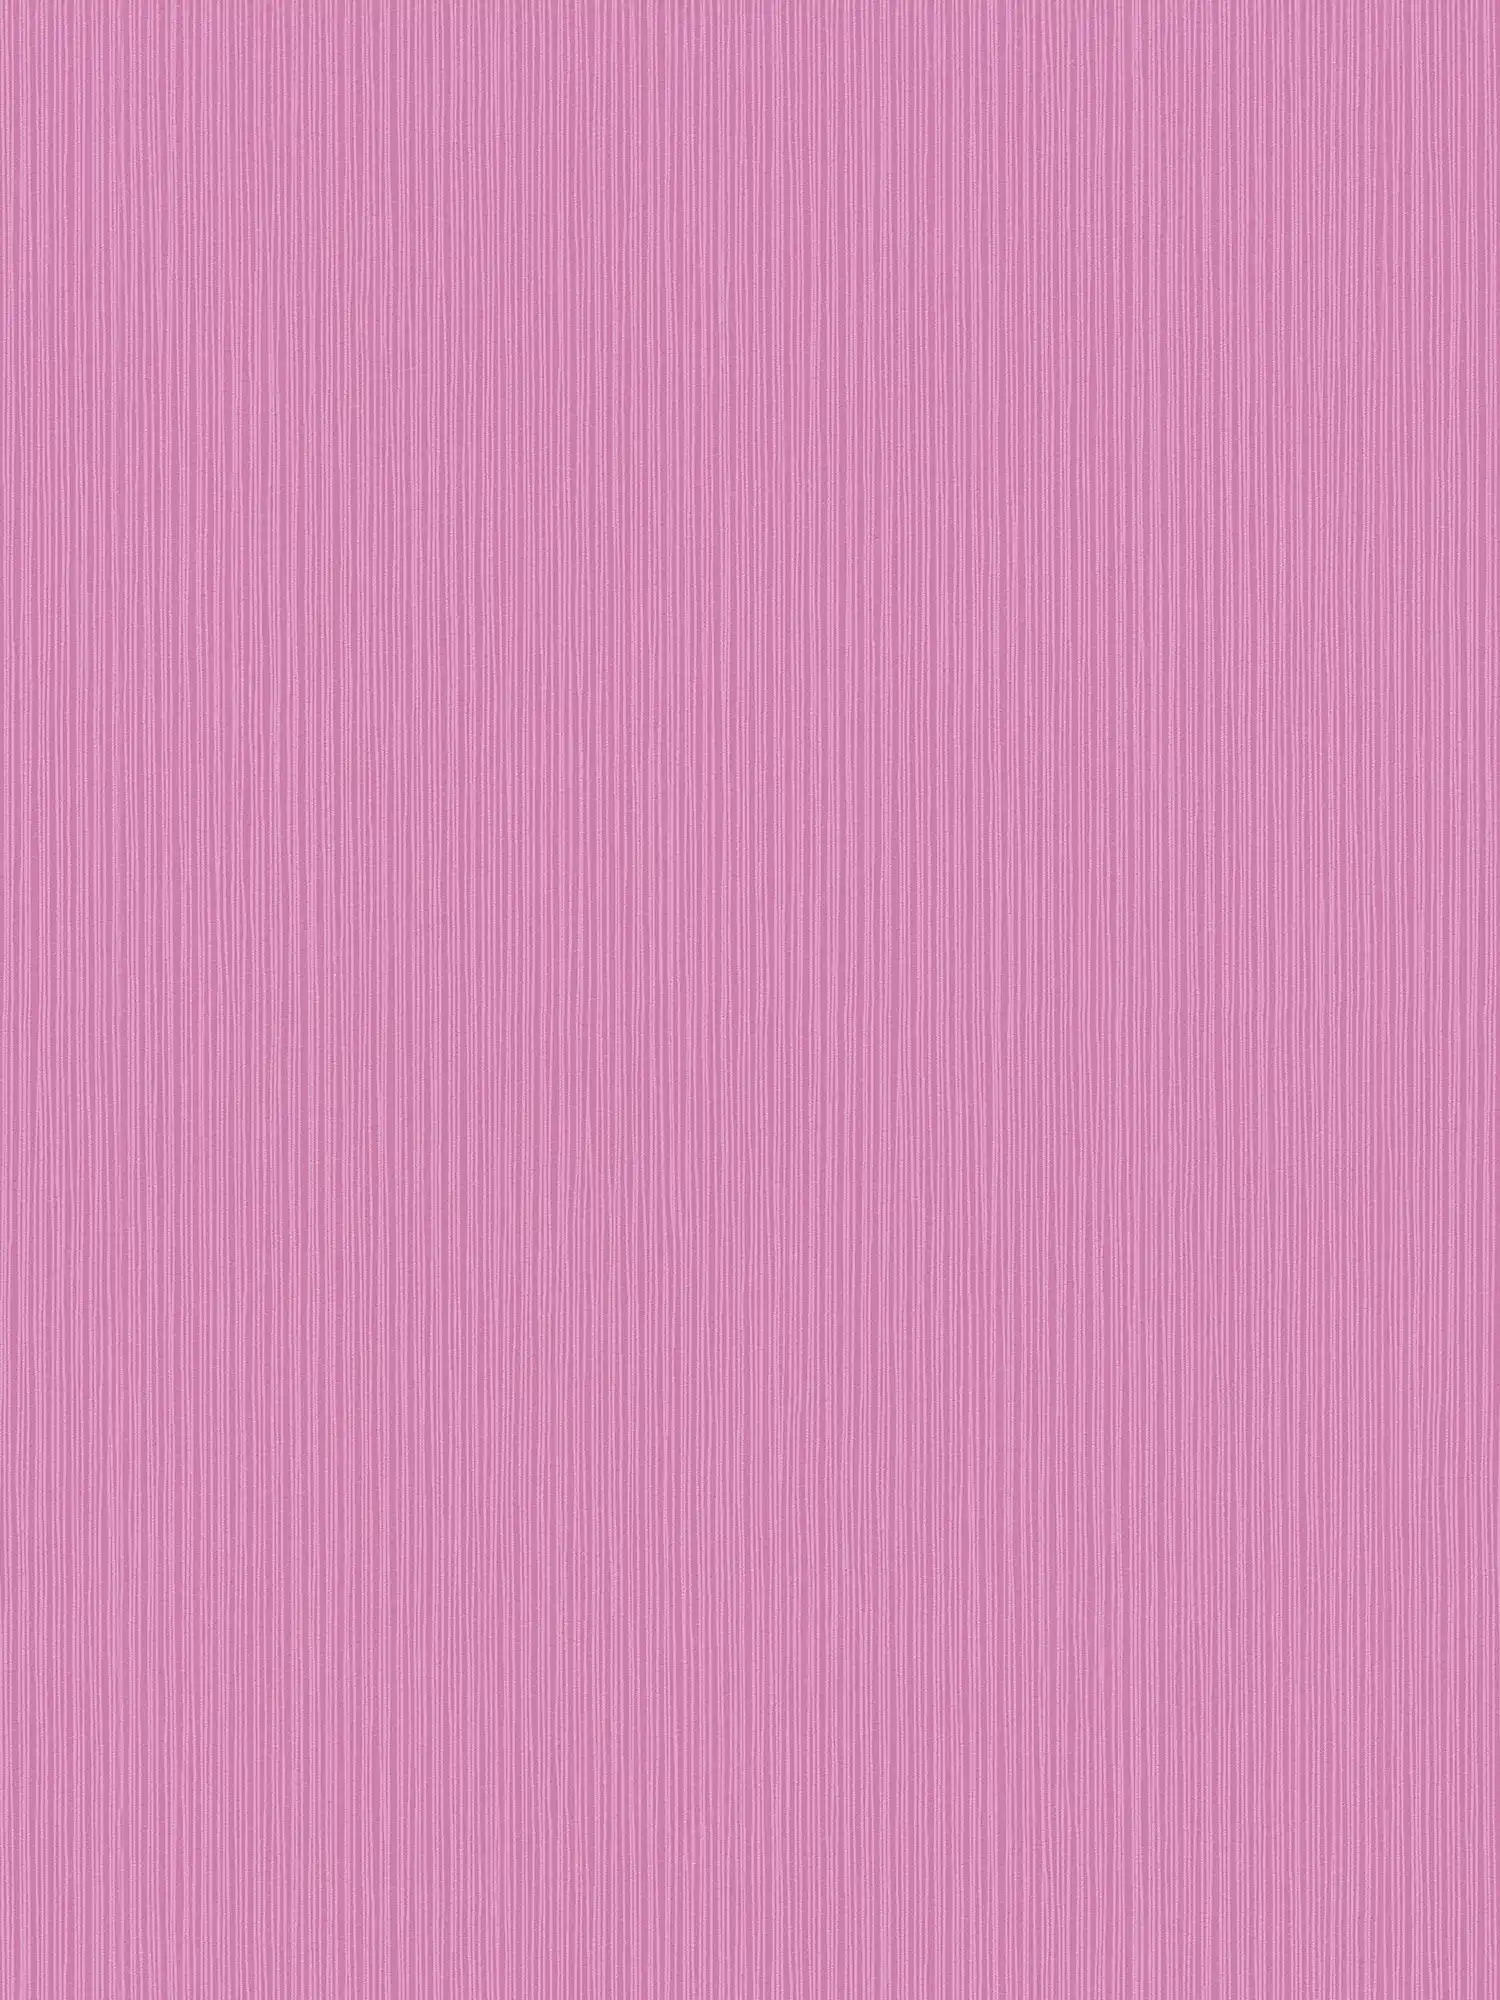 Behang violet met lijnpatroon & structuurontwerp
